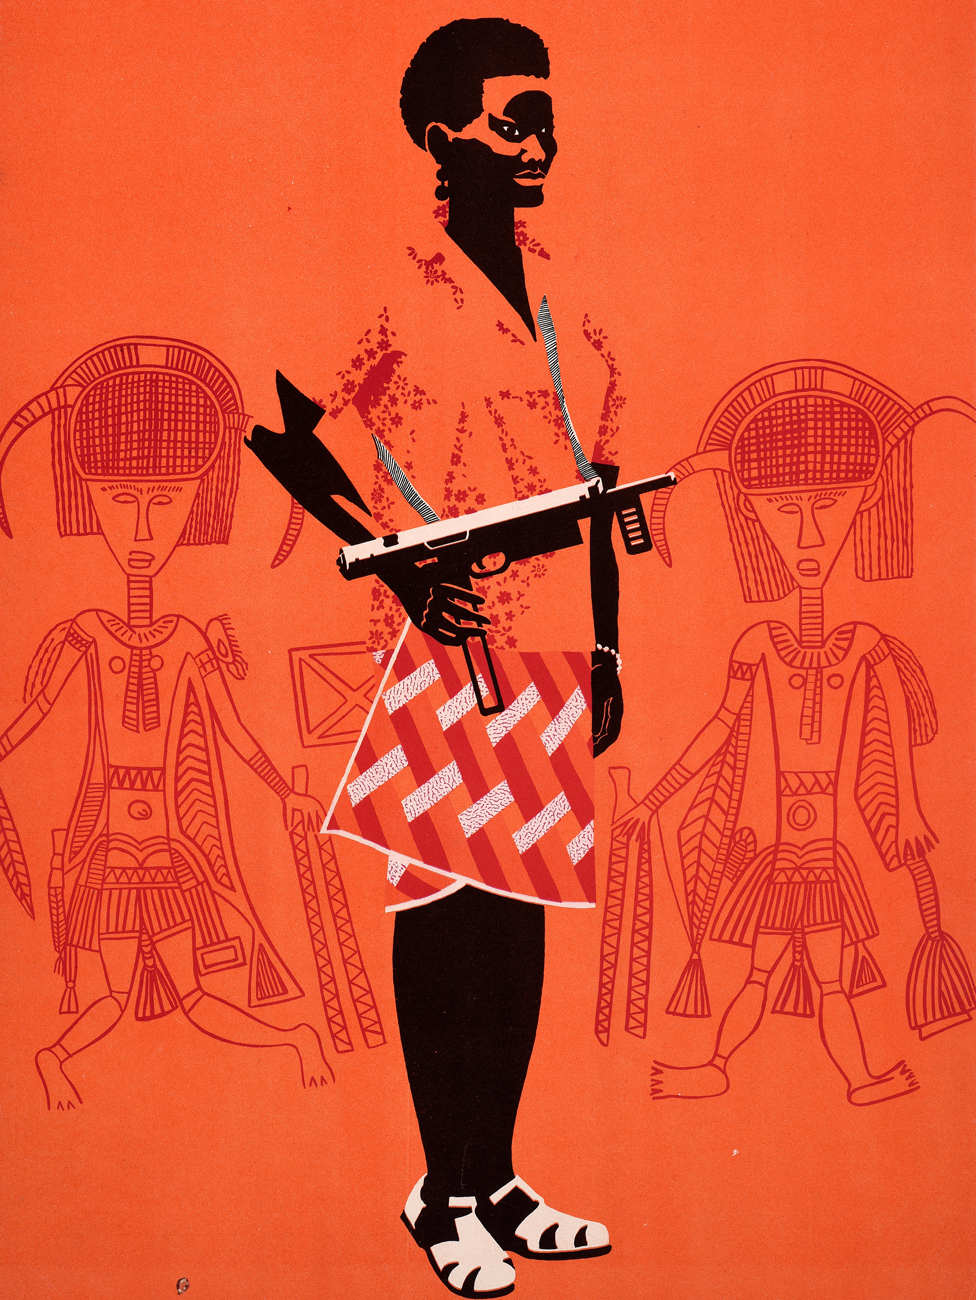 Плакат Ospaaal под названием «День солидарности с народами Гвинеи-Бисау и Кабо-Верде, 1968 год», на котором изображена женщина с пистолетом